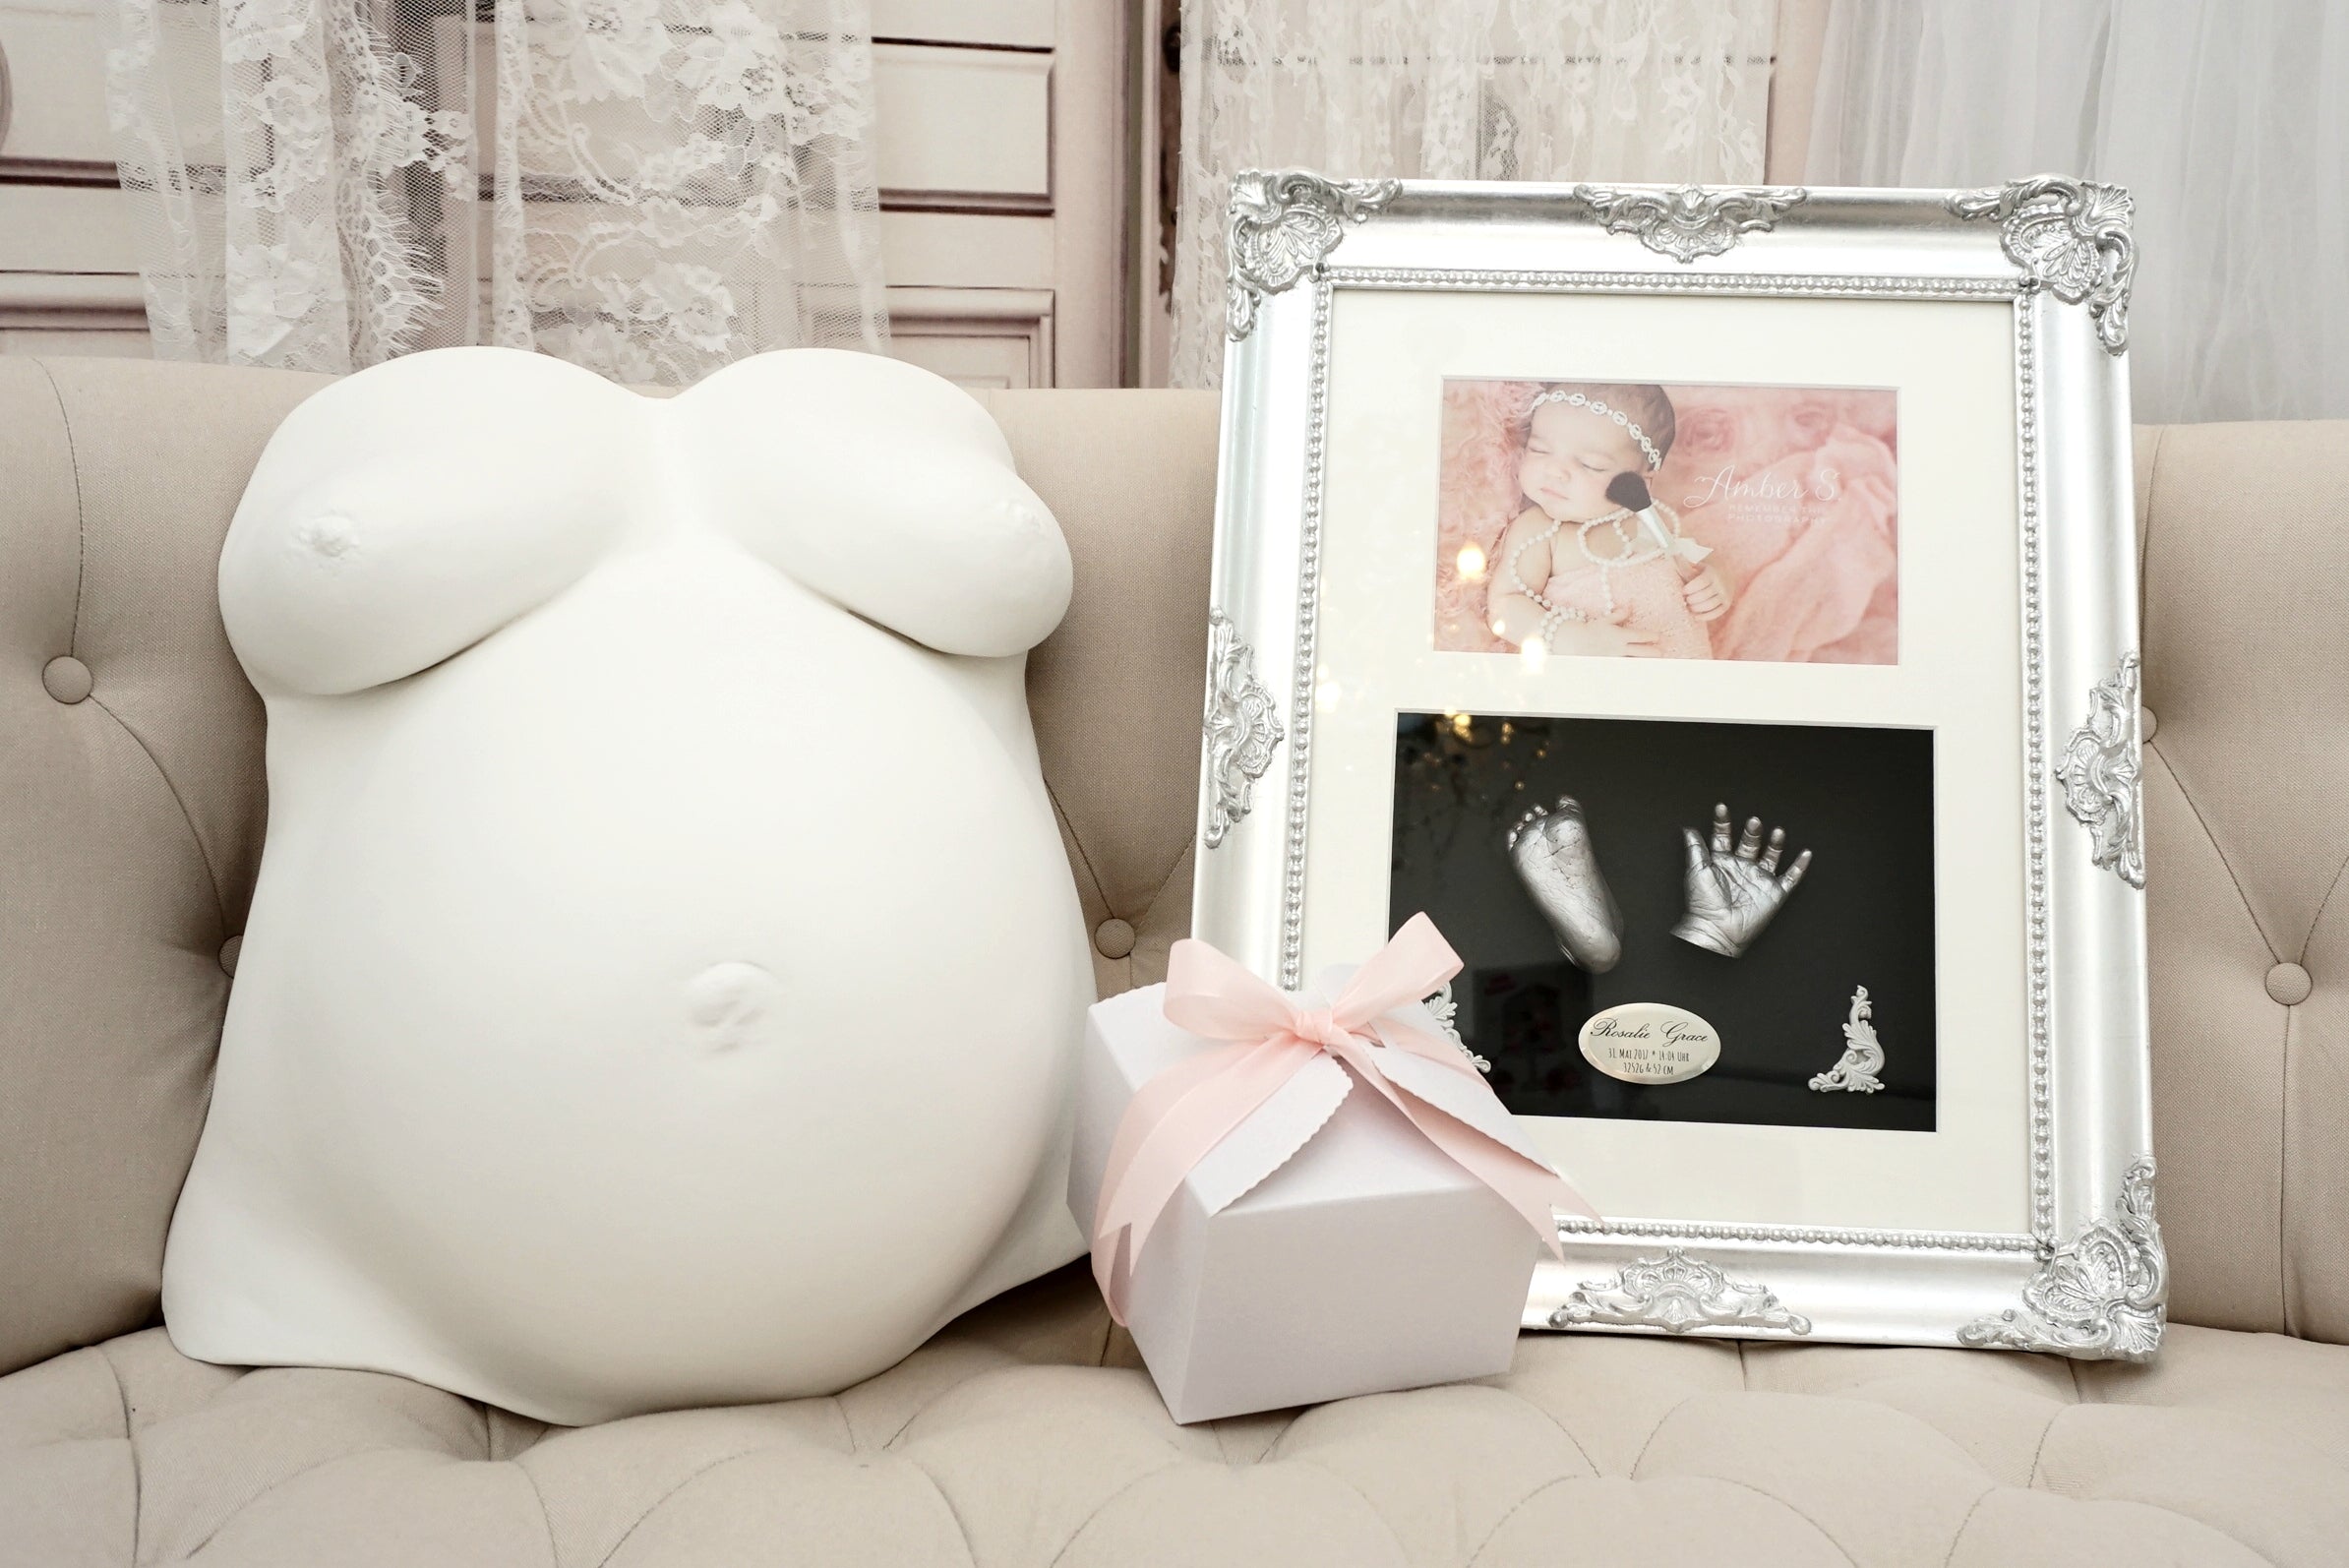 Der Gipsabdruck Bauch- und Brust Abdruck aus der Schwangerschaft ist ein Must-Have als Erinnerungsstück. Nach der Geburt folgen süße 3D Abdrücke von Babys Händchen und Füßchen, welche edel in Rahmen platziert werden können. 